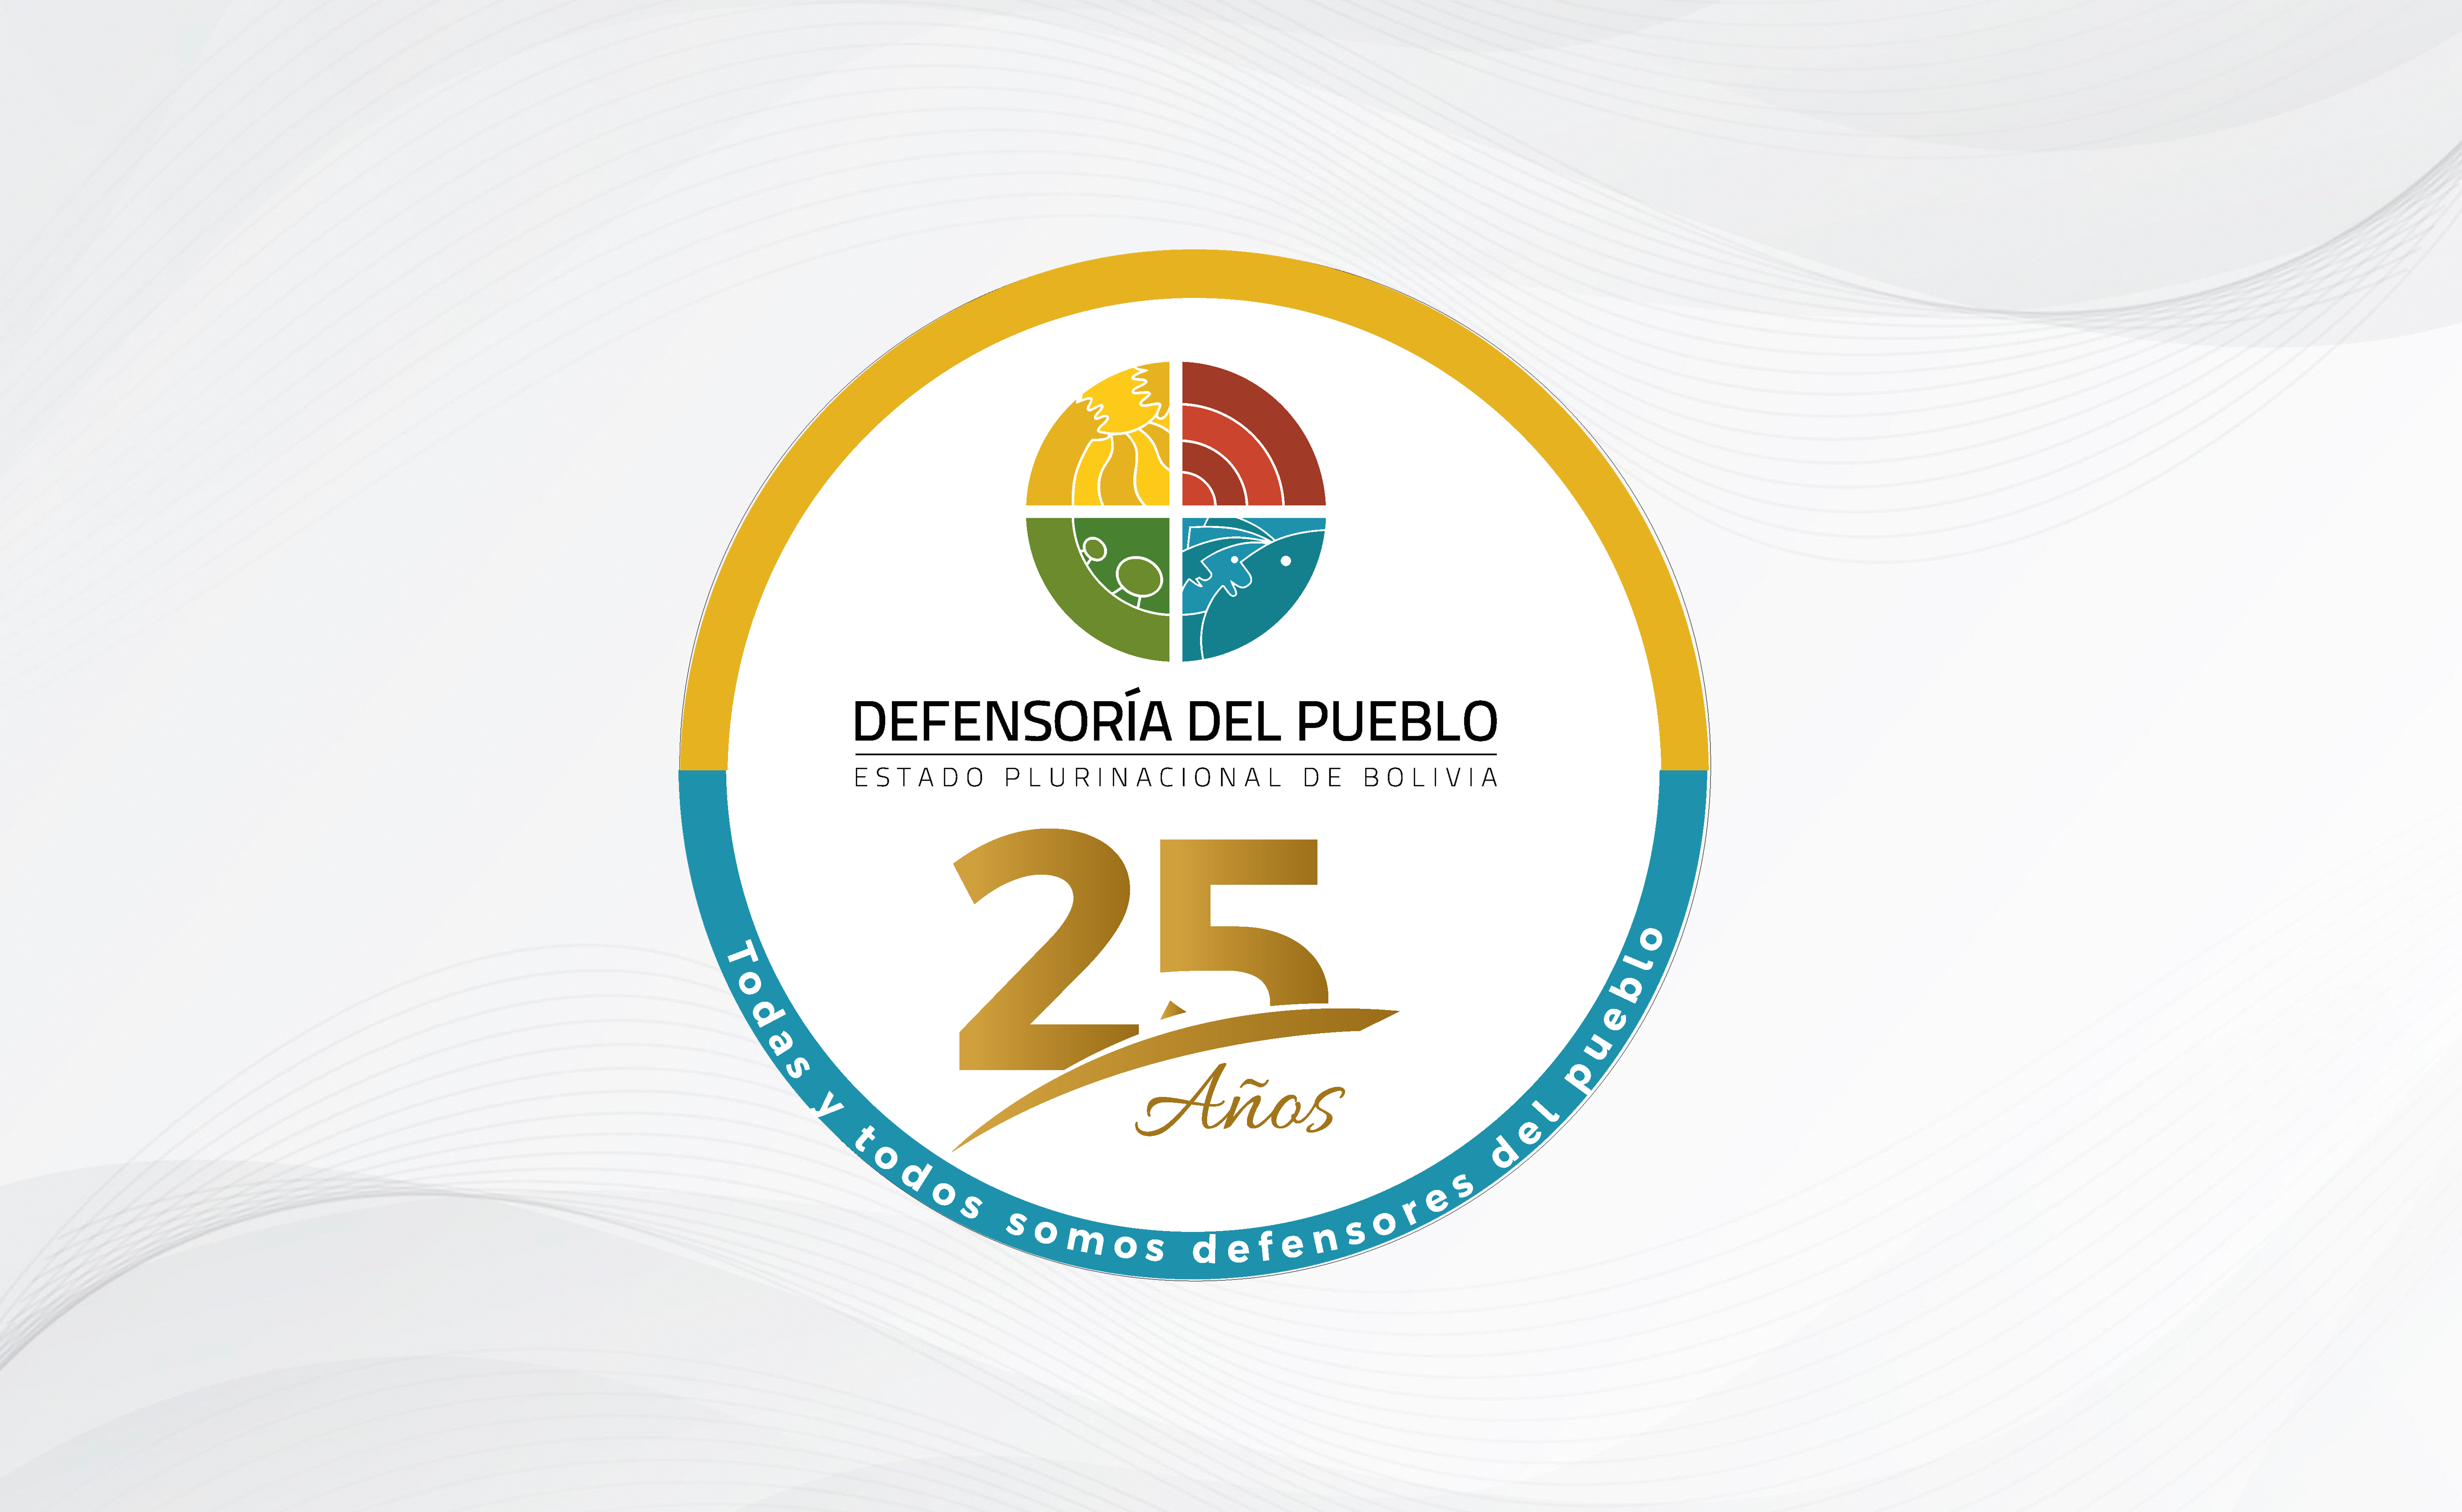 Defensoría del Pueblo inicia ciclo conmemorativo por su 25 aniversario y los 75 años de la Declaración Universal de los Derechos Humanos